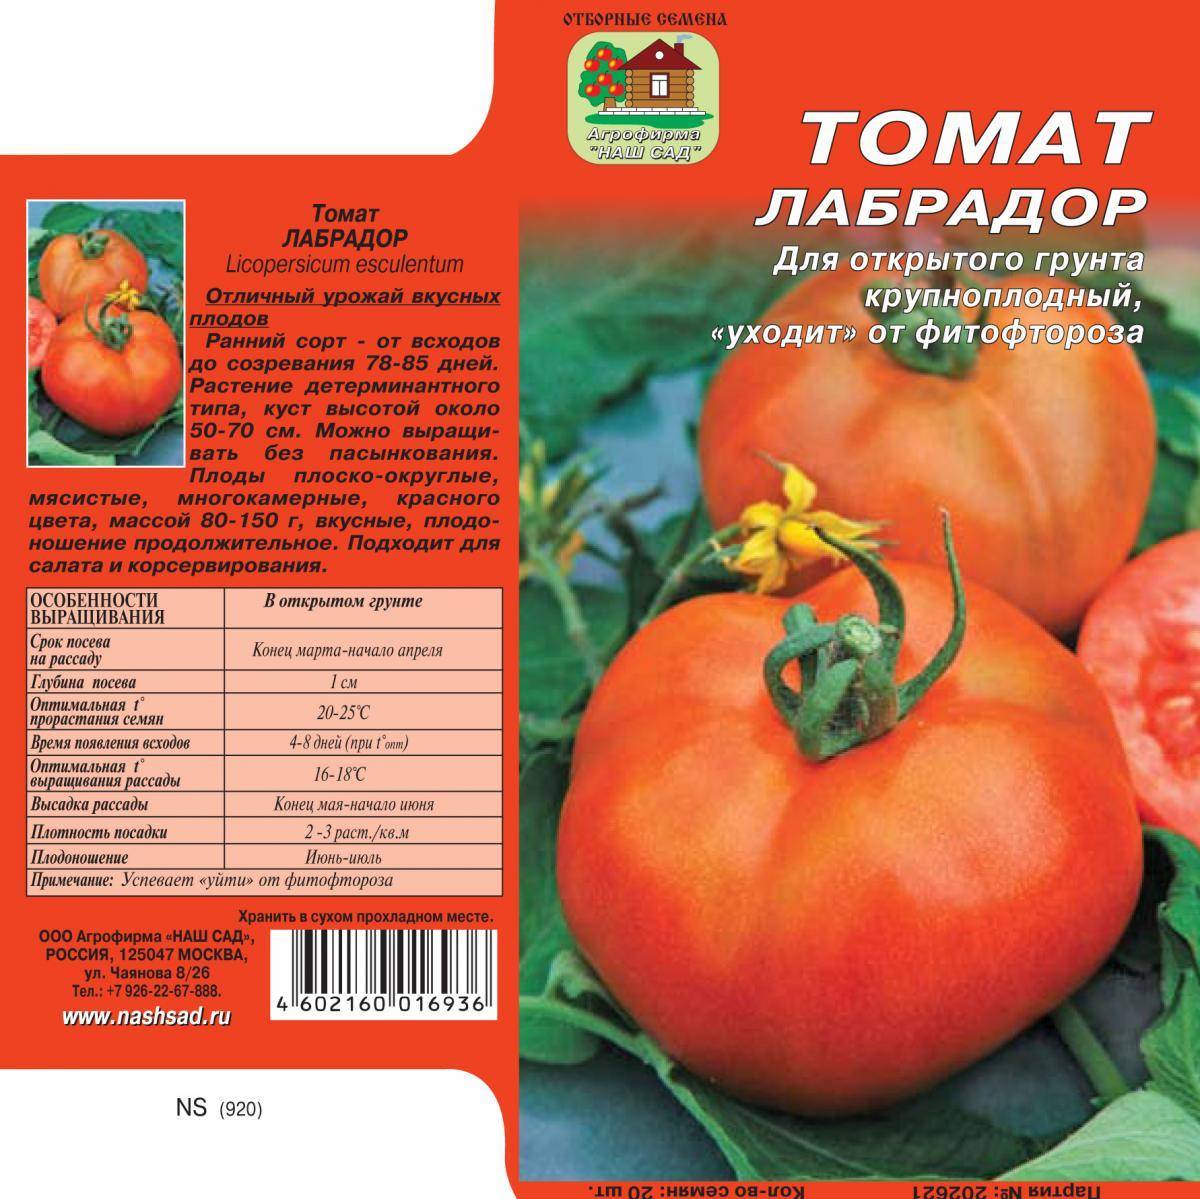 Томат сахар белый: характеристика и описание сорта, отзывы об урожайности помидоров и фото плодов